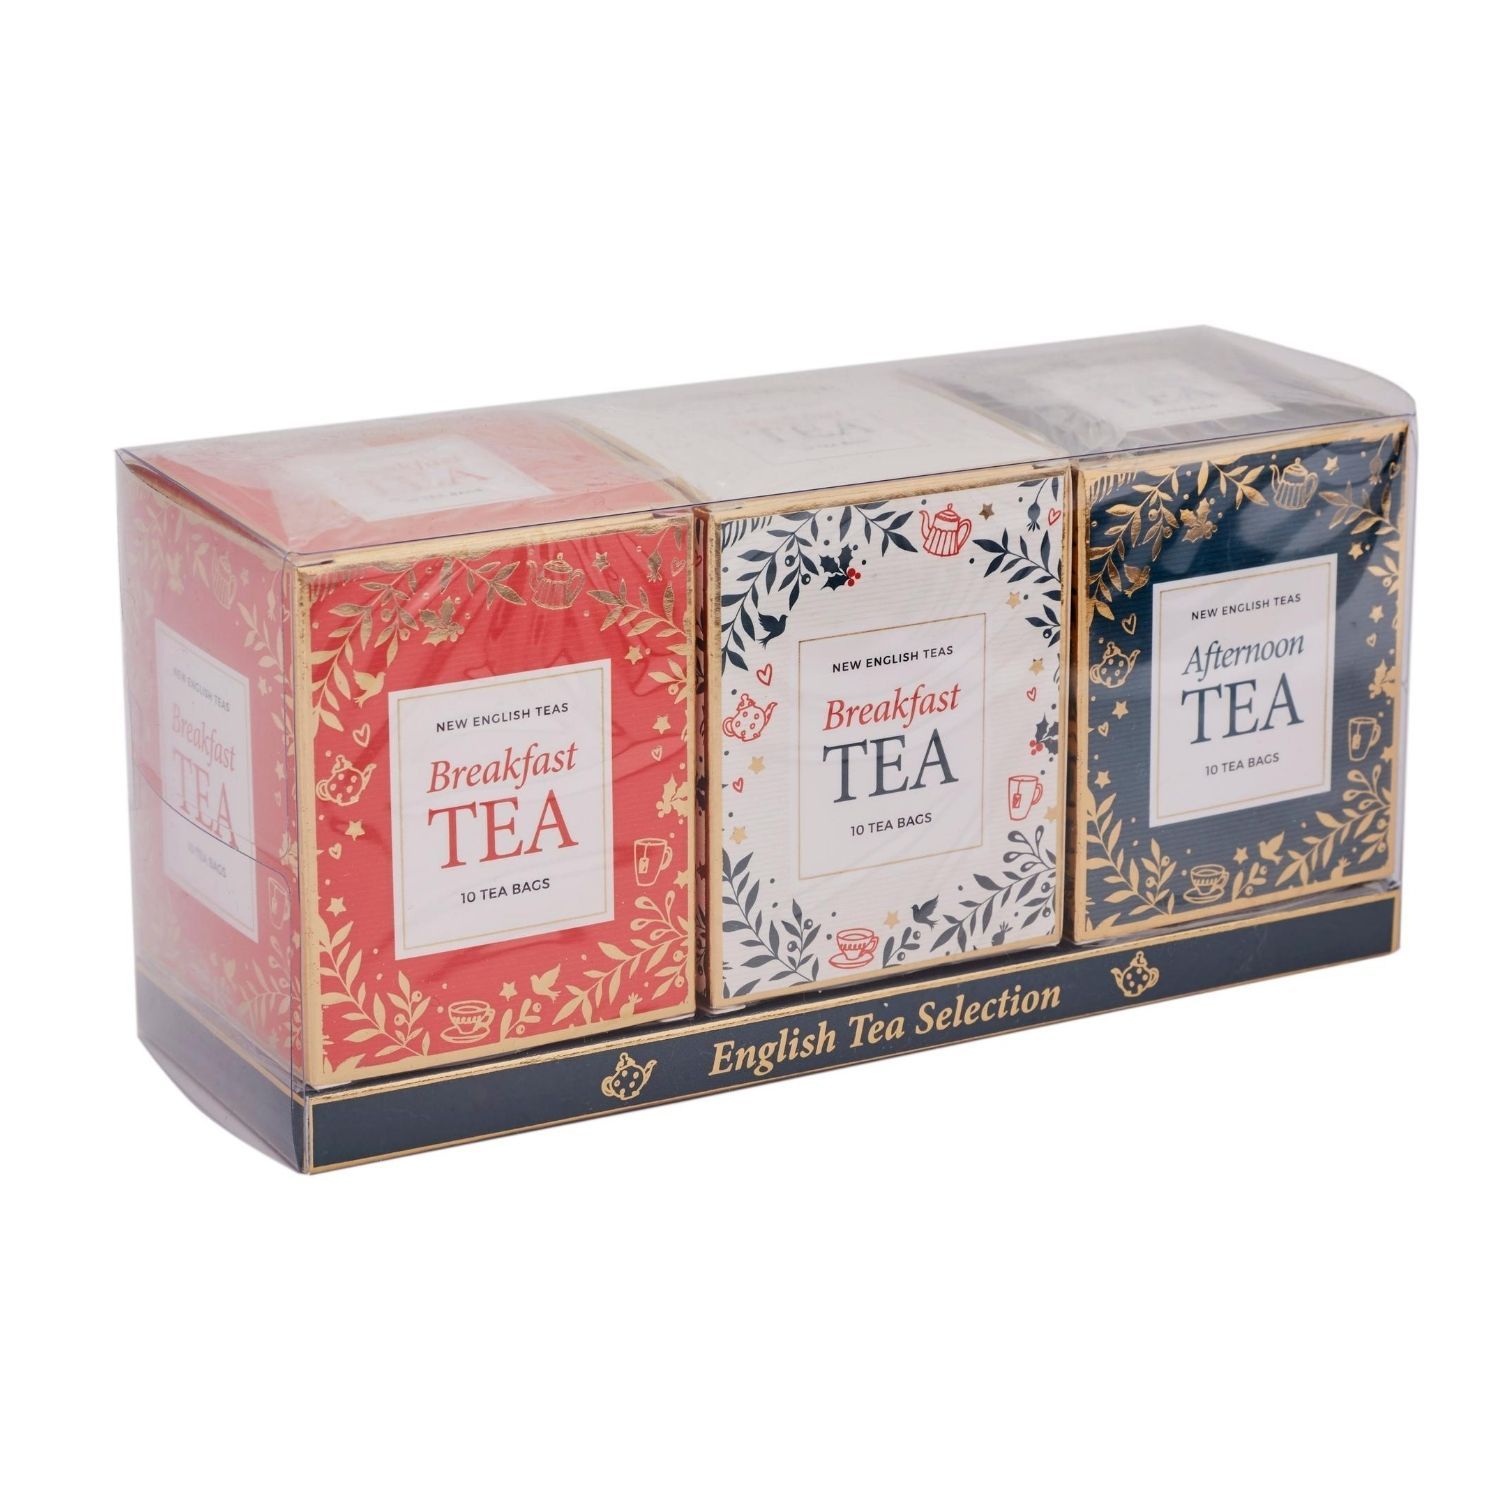 Christmas-Themed Teabag Box Gift Set New English Teas 